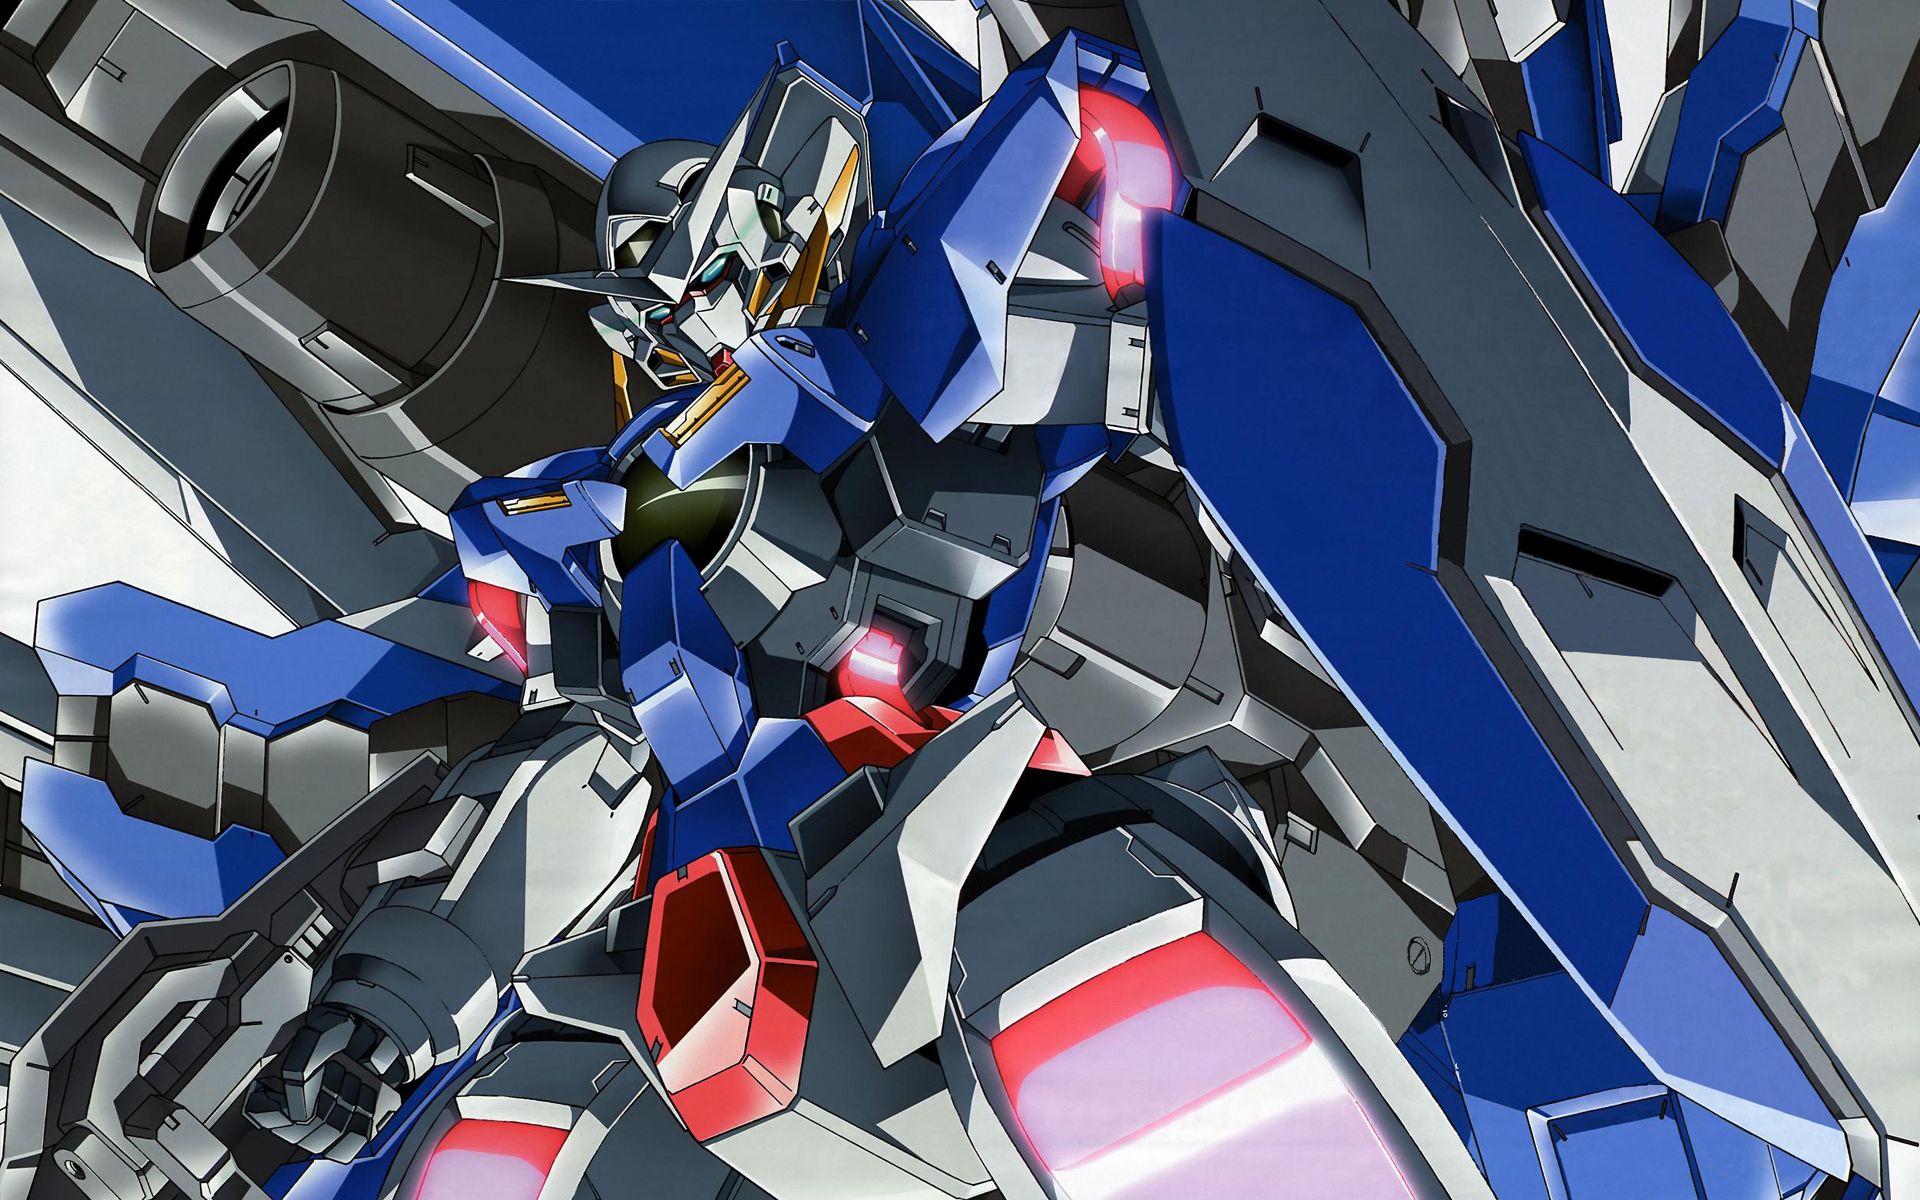 Mobile Suit Gundam 00 - HD Wallpaper 